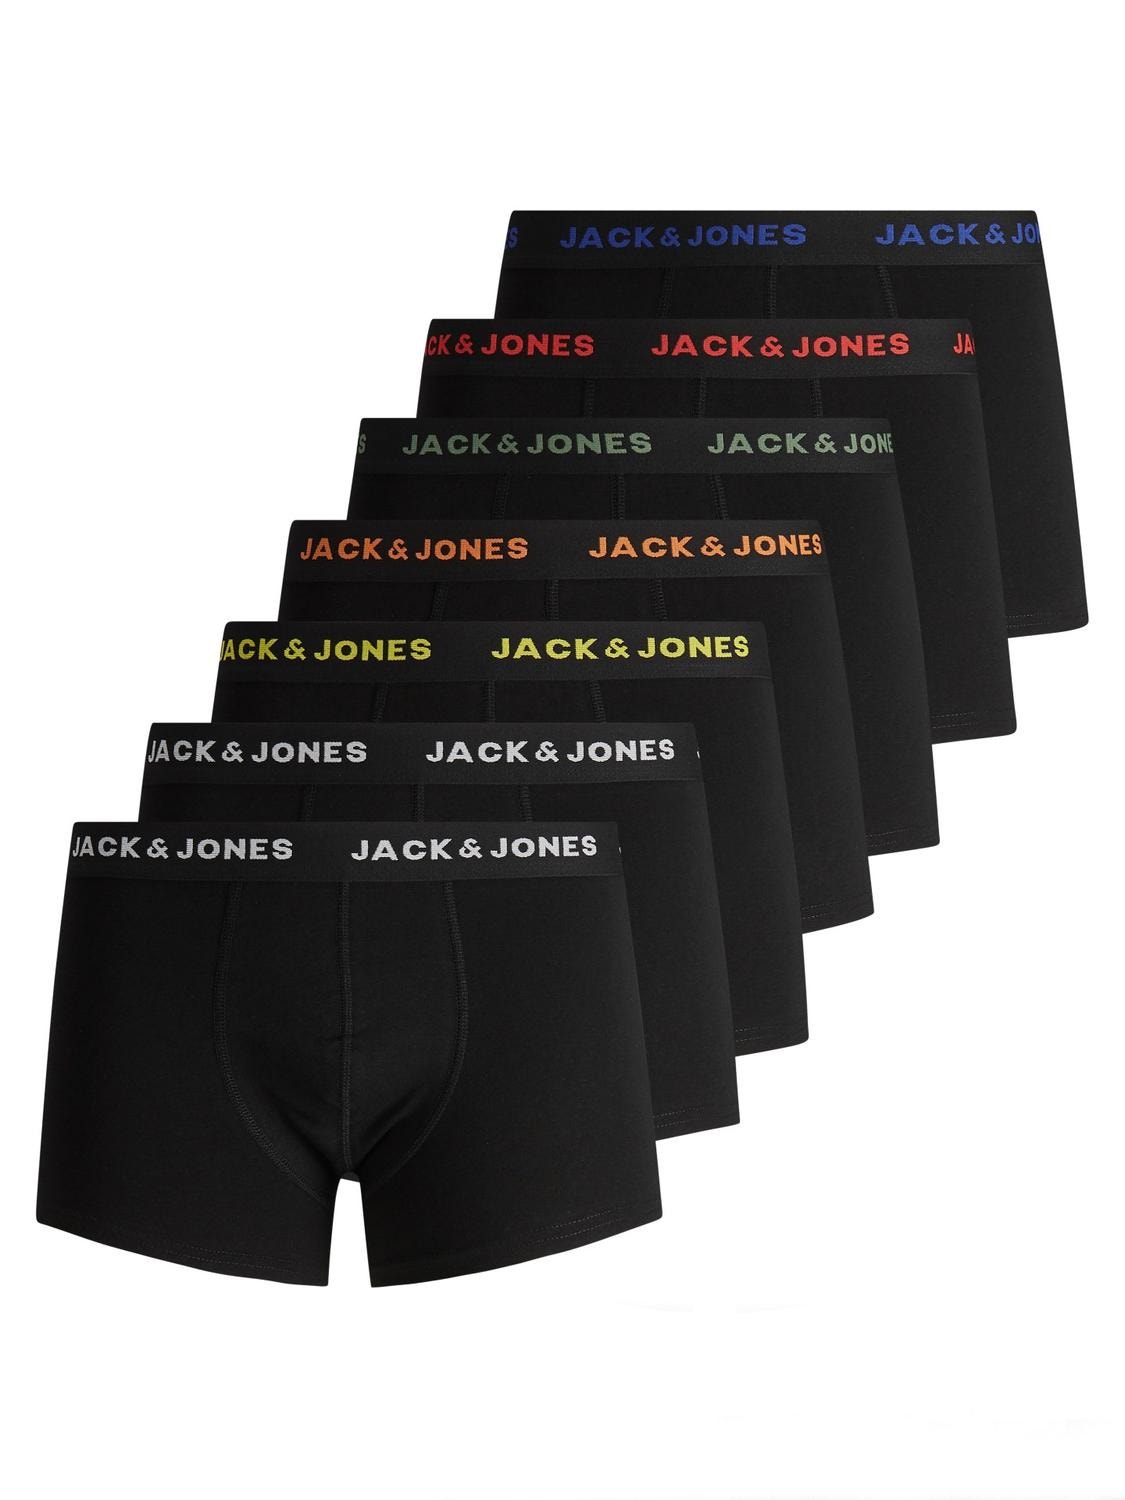 Jack & Jones 7er-pack Boxershorts -Black - 12165587